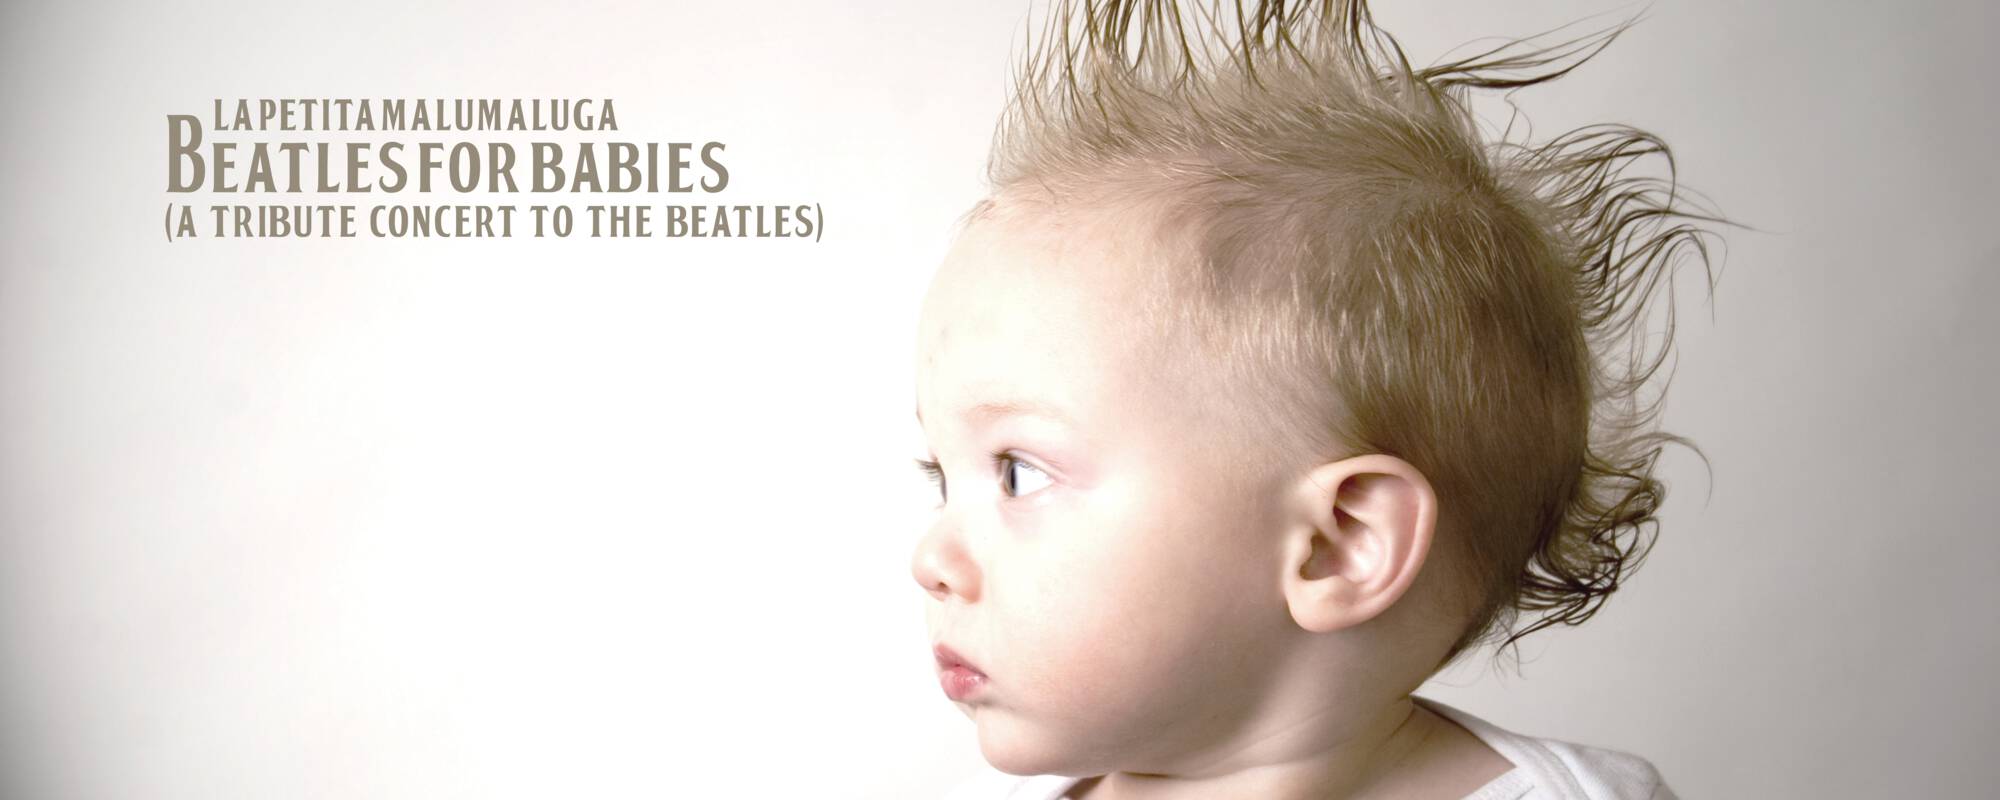 【Family Series】La petita malumaluga Beatles for Babies